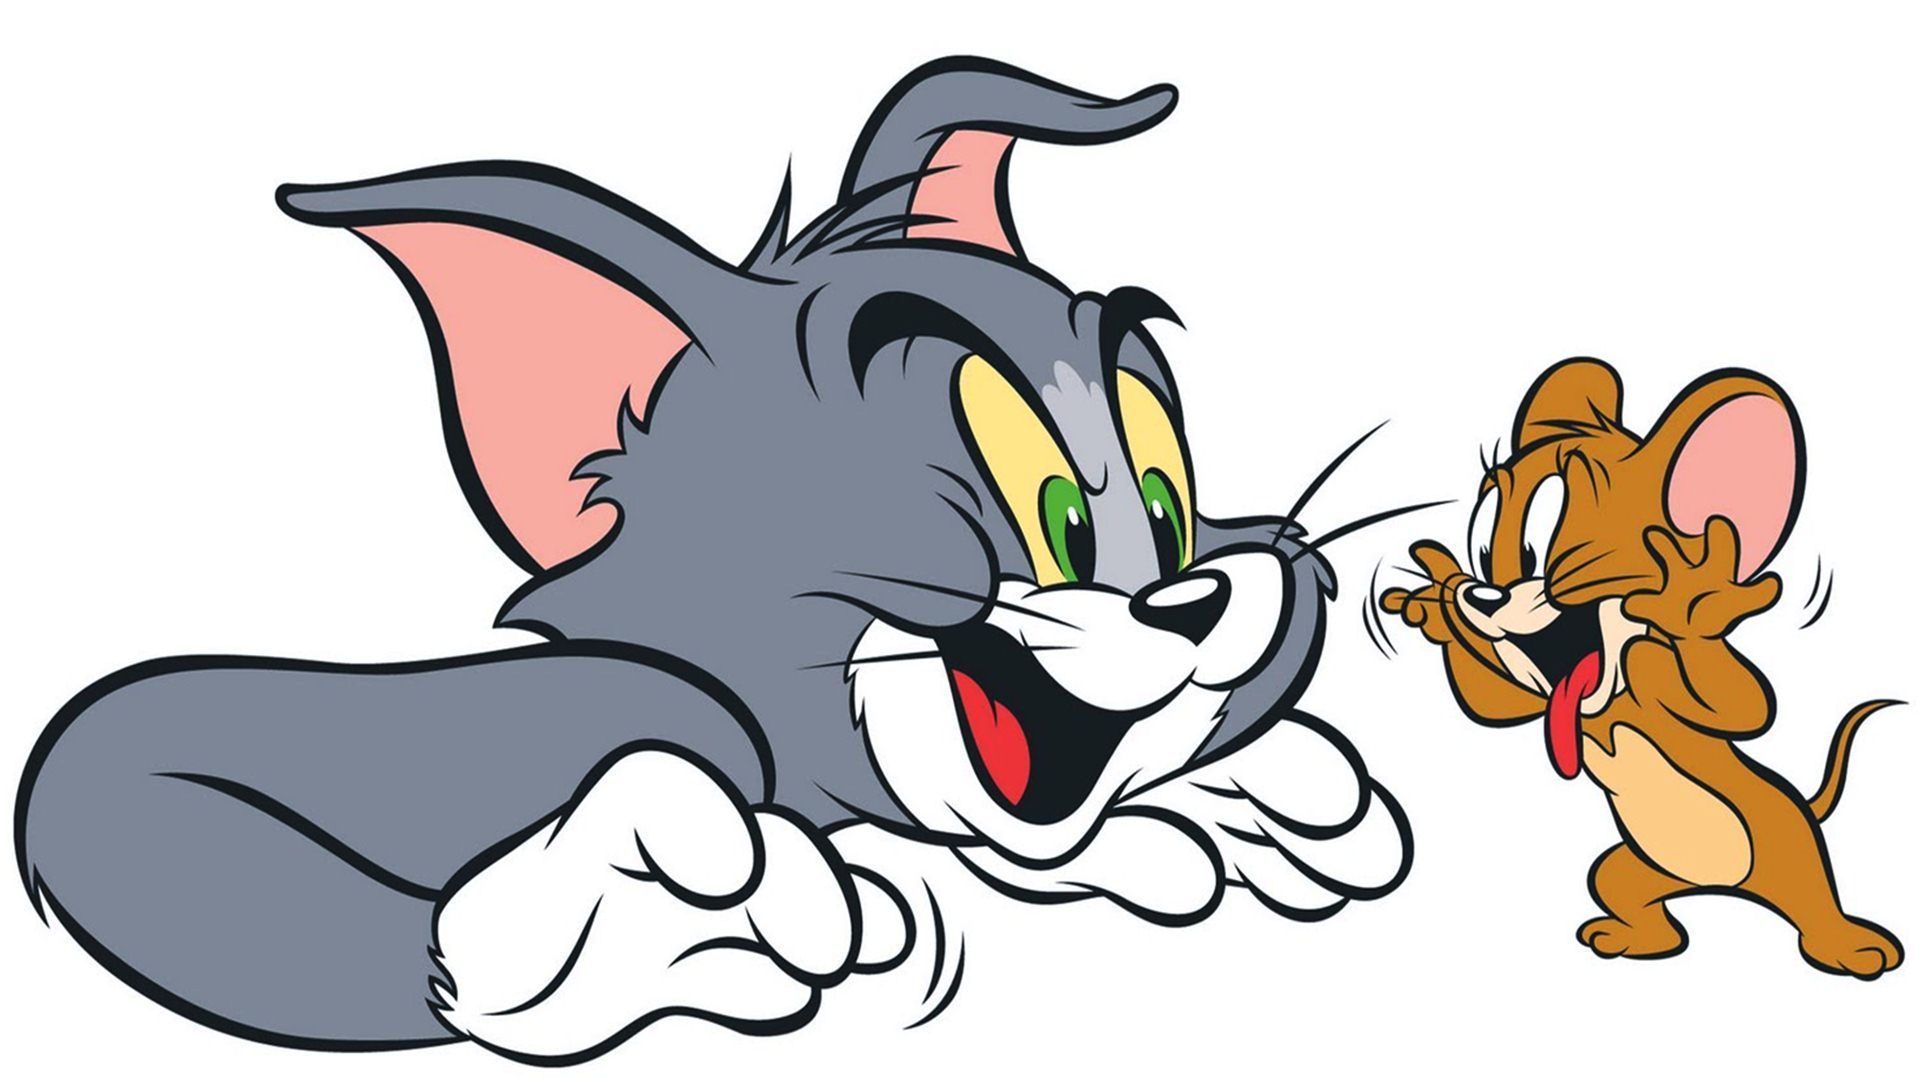 Tom and Jerry Cartoon Wallpapers - Top Những Hình Ảnh Đẹp